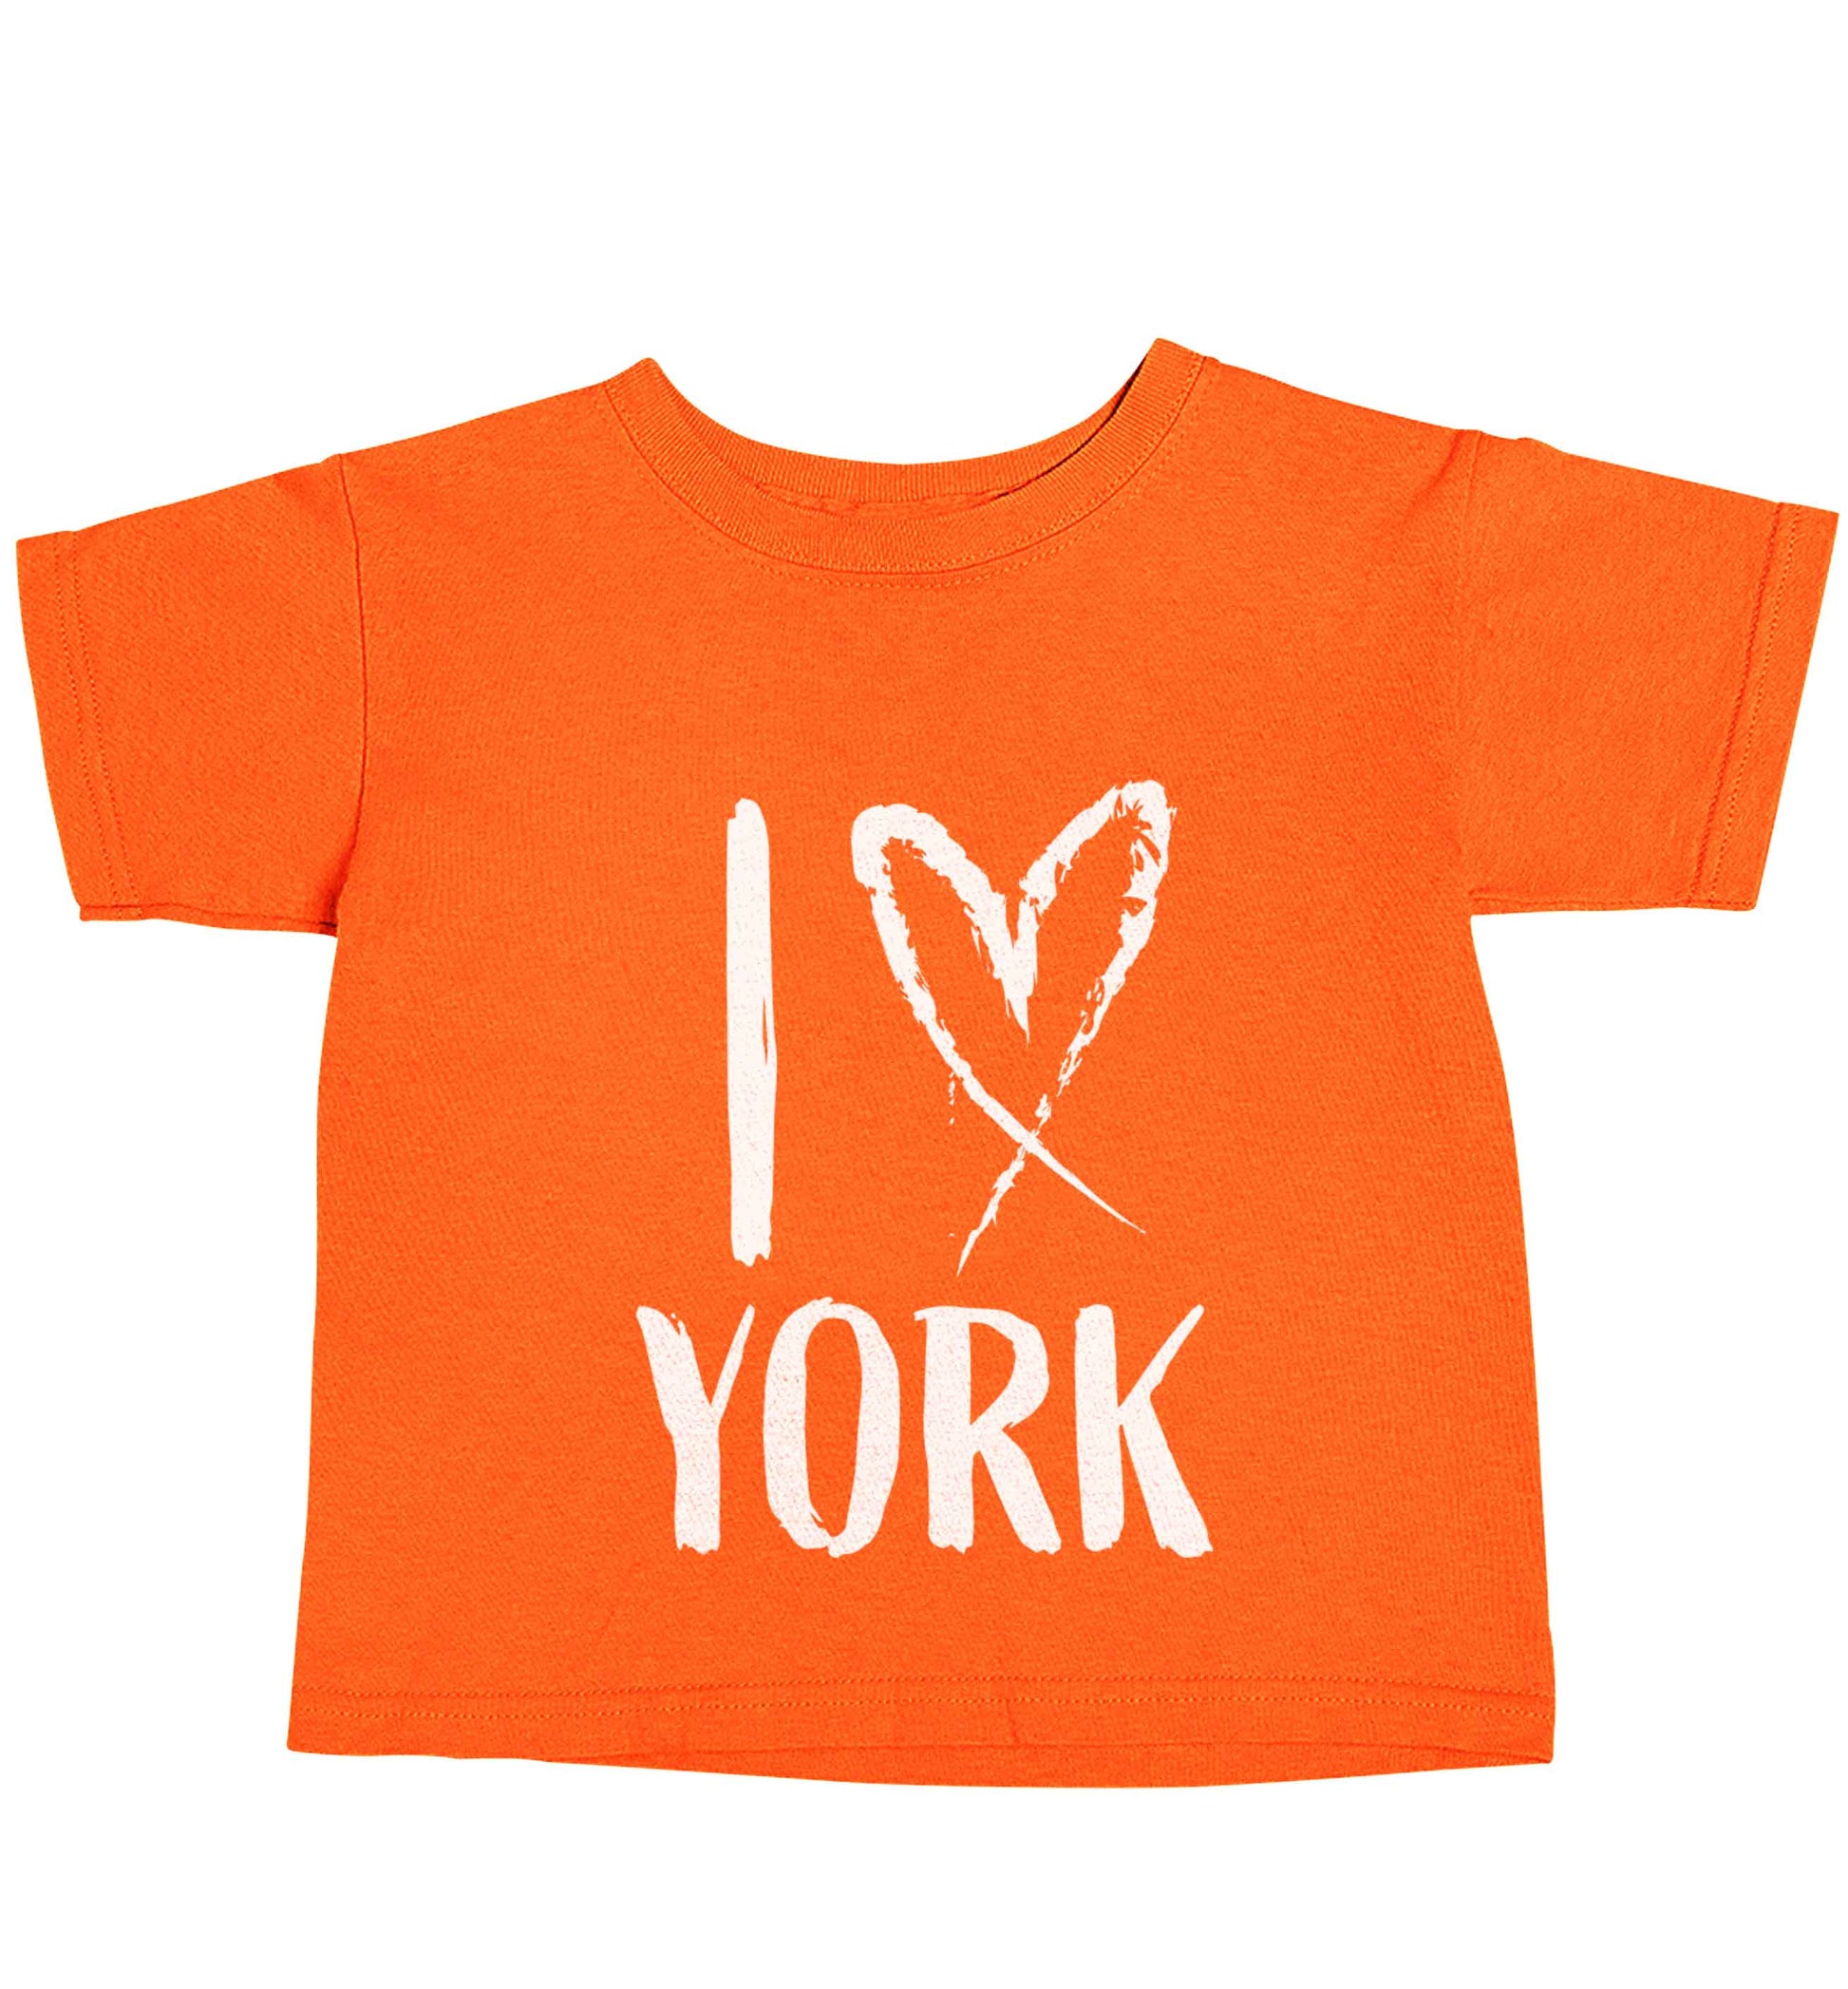 I love York orange baby toddler Tshirt 2 Years